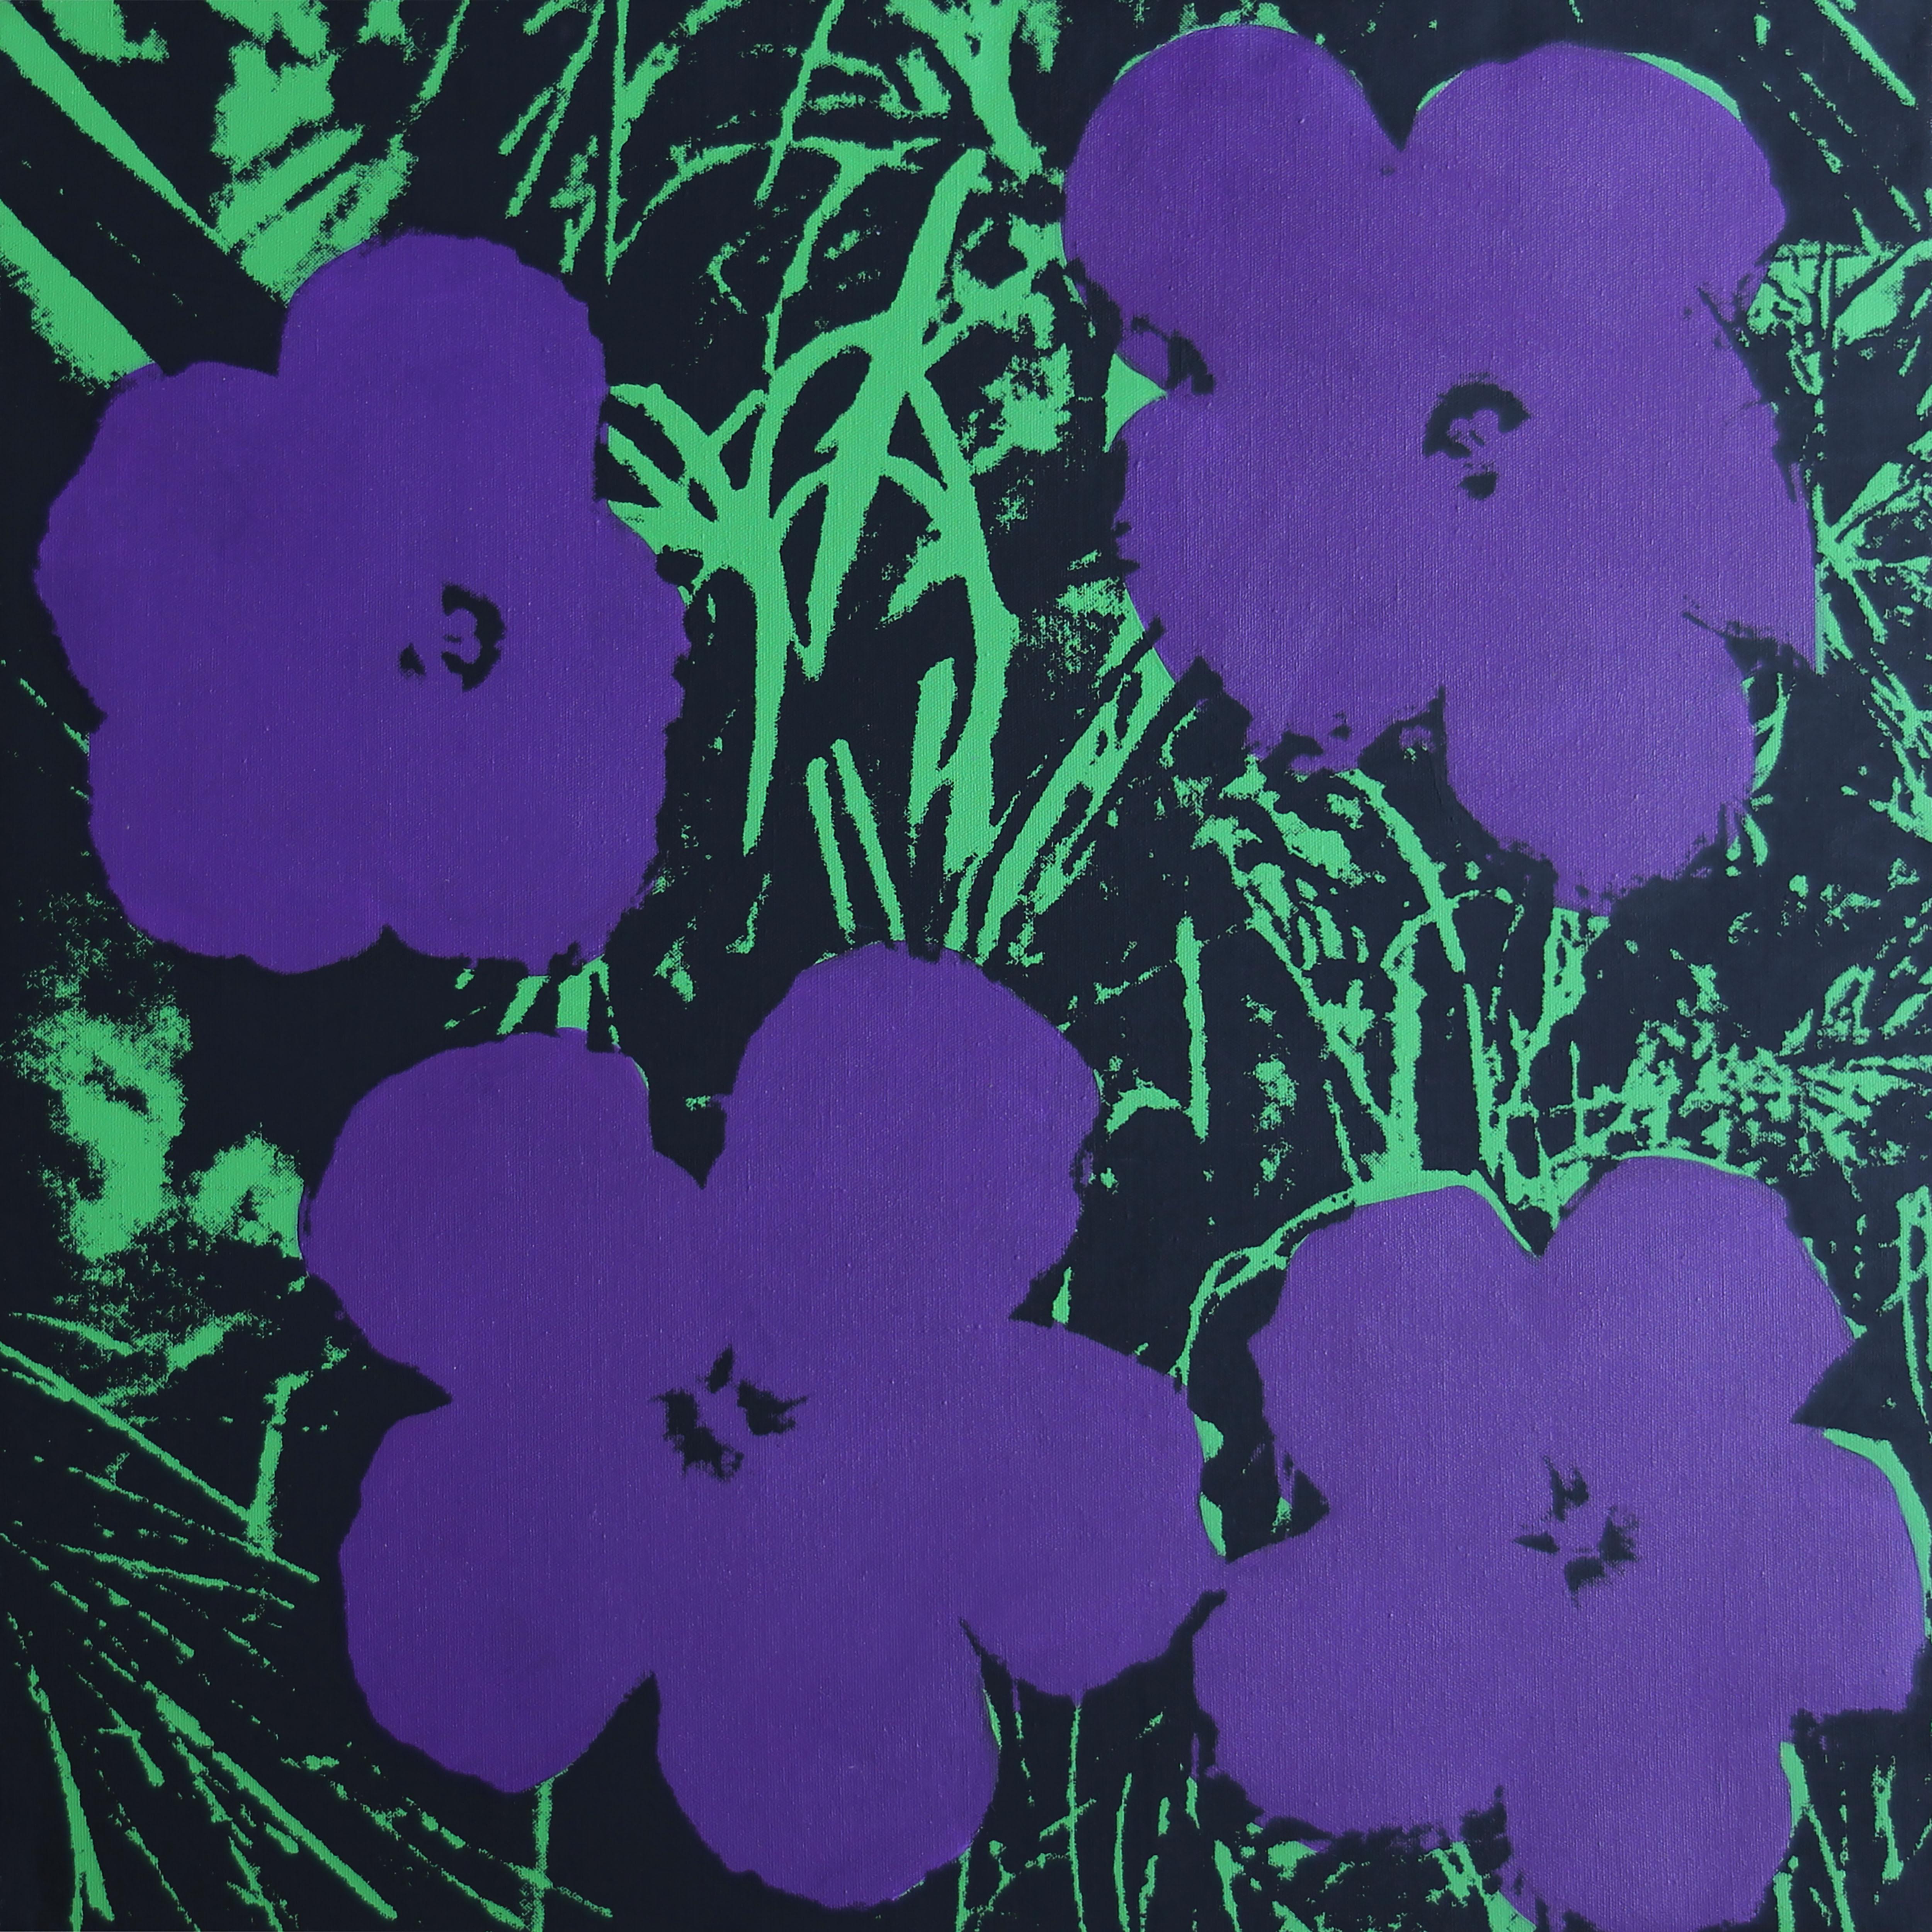 Denied Warhol Flowers, (Violet/Pourpre) Sérigraphie de Charles Lutz
Sérigraphie et acrylique sur toile avec le cachet Denied du Andy Warhol Art Authentication Board.
24 x 24" pouces
2008

En 2007, la série "Warhol Denied" de Gaines a attiré